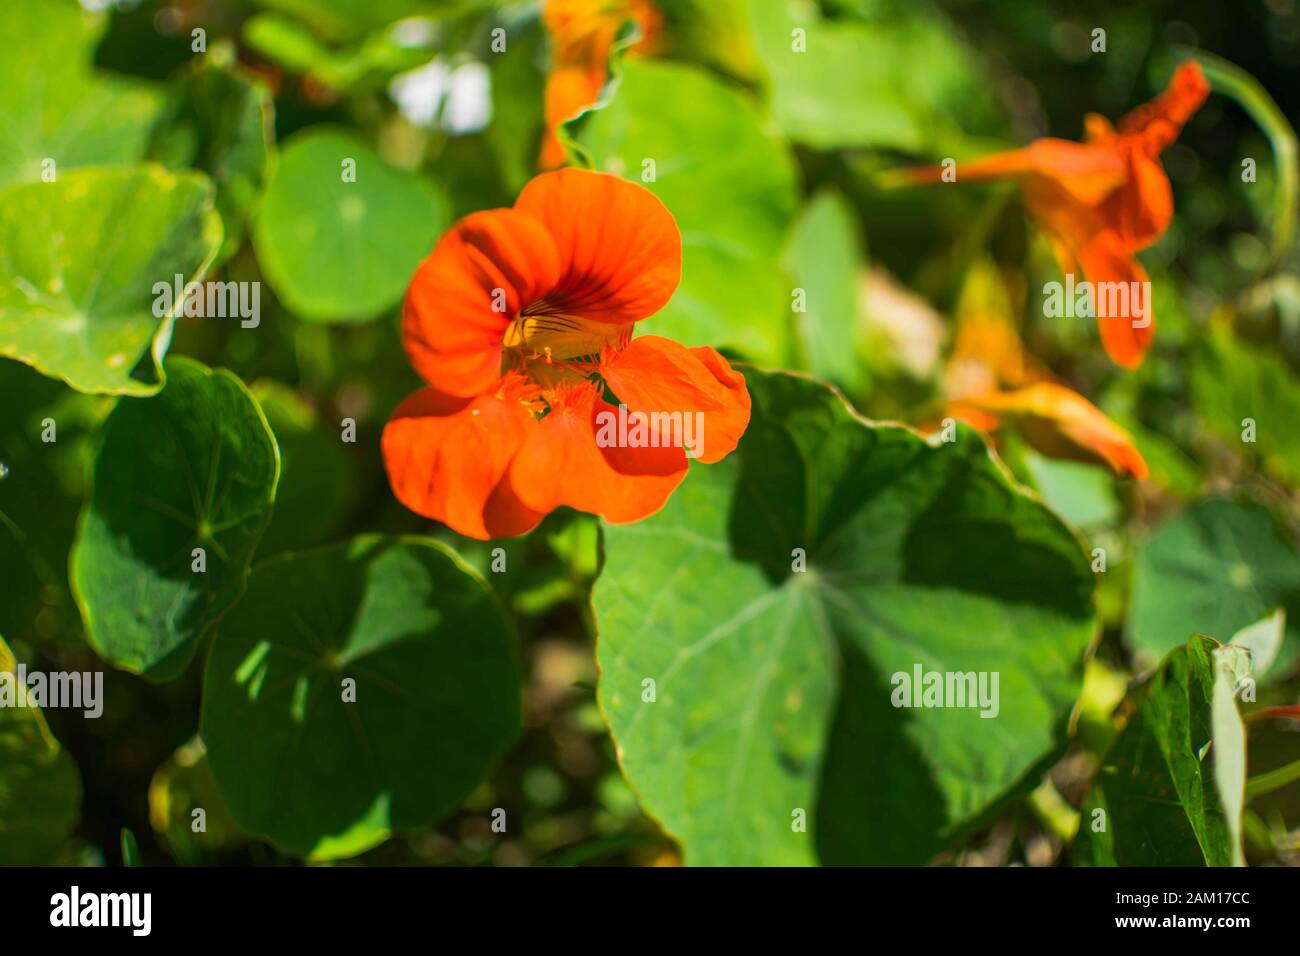 Blatt Tropaeolum majus (Garten-Nasturtium, indische Kress oder mönche Kreß)  ist eine Art der blühenden Pflanze in der Familie Tropaeolaceae. Blume und  hol Stockfotografie - Alamy